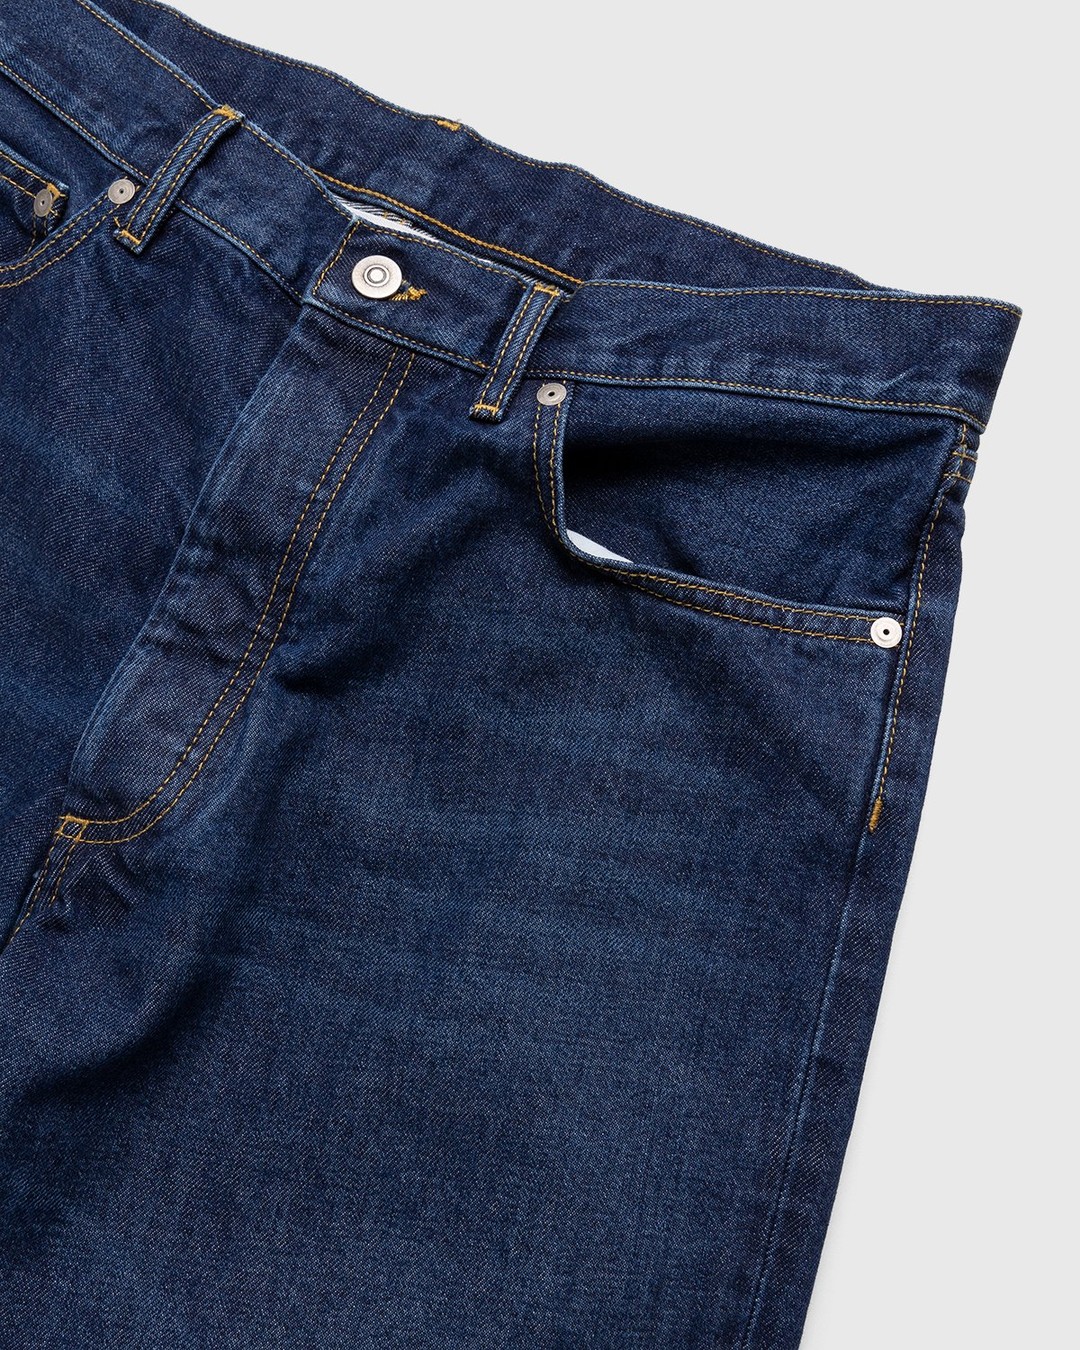 Maison Margiela – 5 Pocket Jeans Blue - Pants - Blue - Image 4